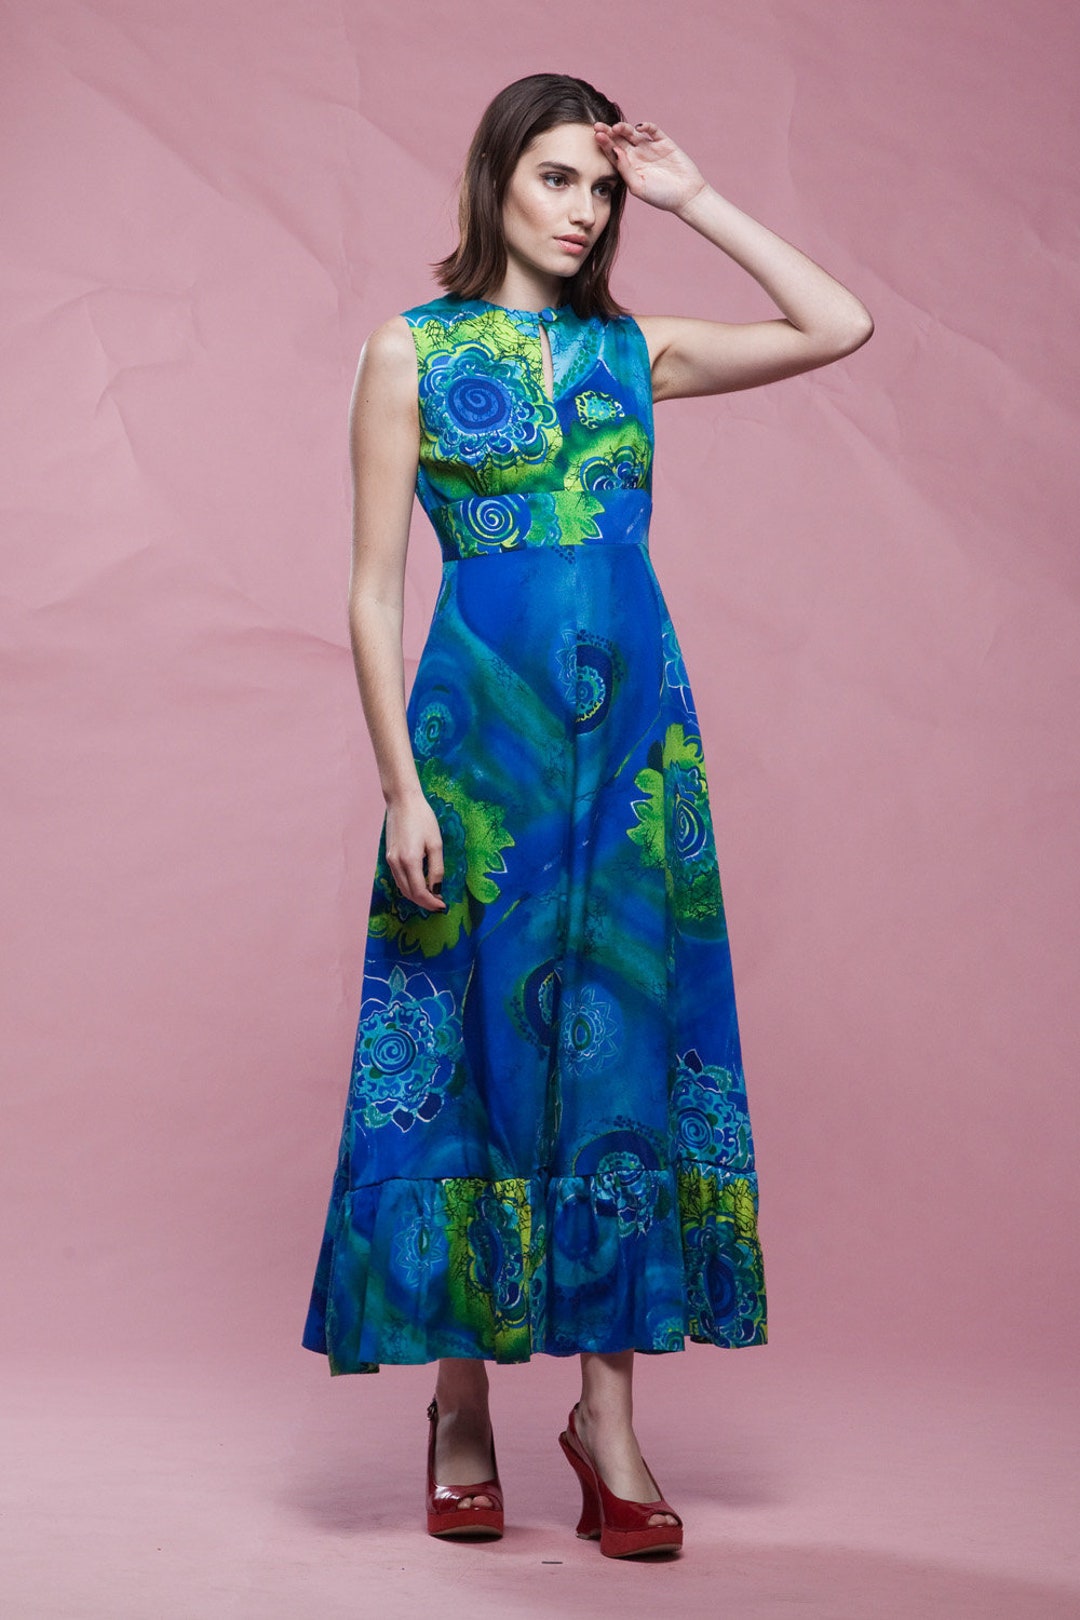 Hawaiian Maxi Dress Blue Cotton Print Sleeveless Keyhole - Etsy